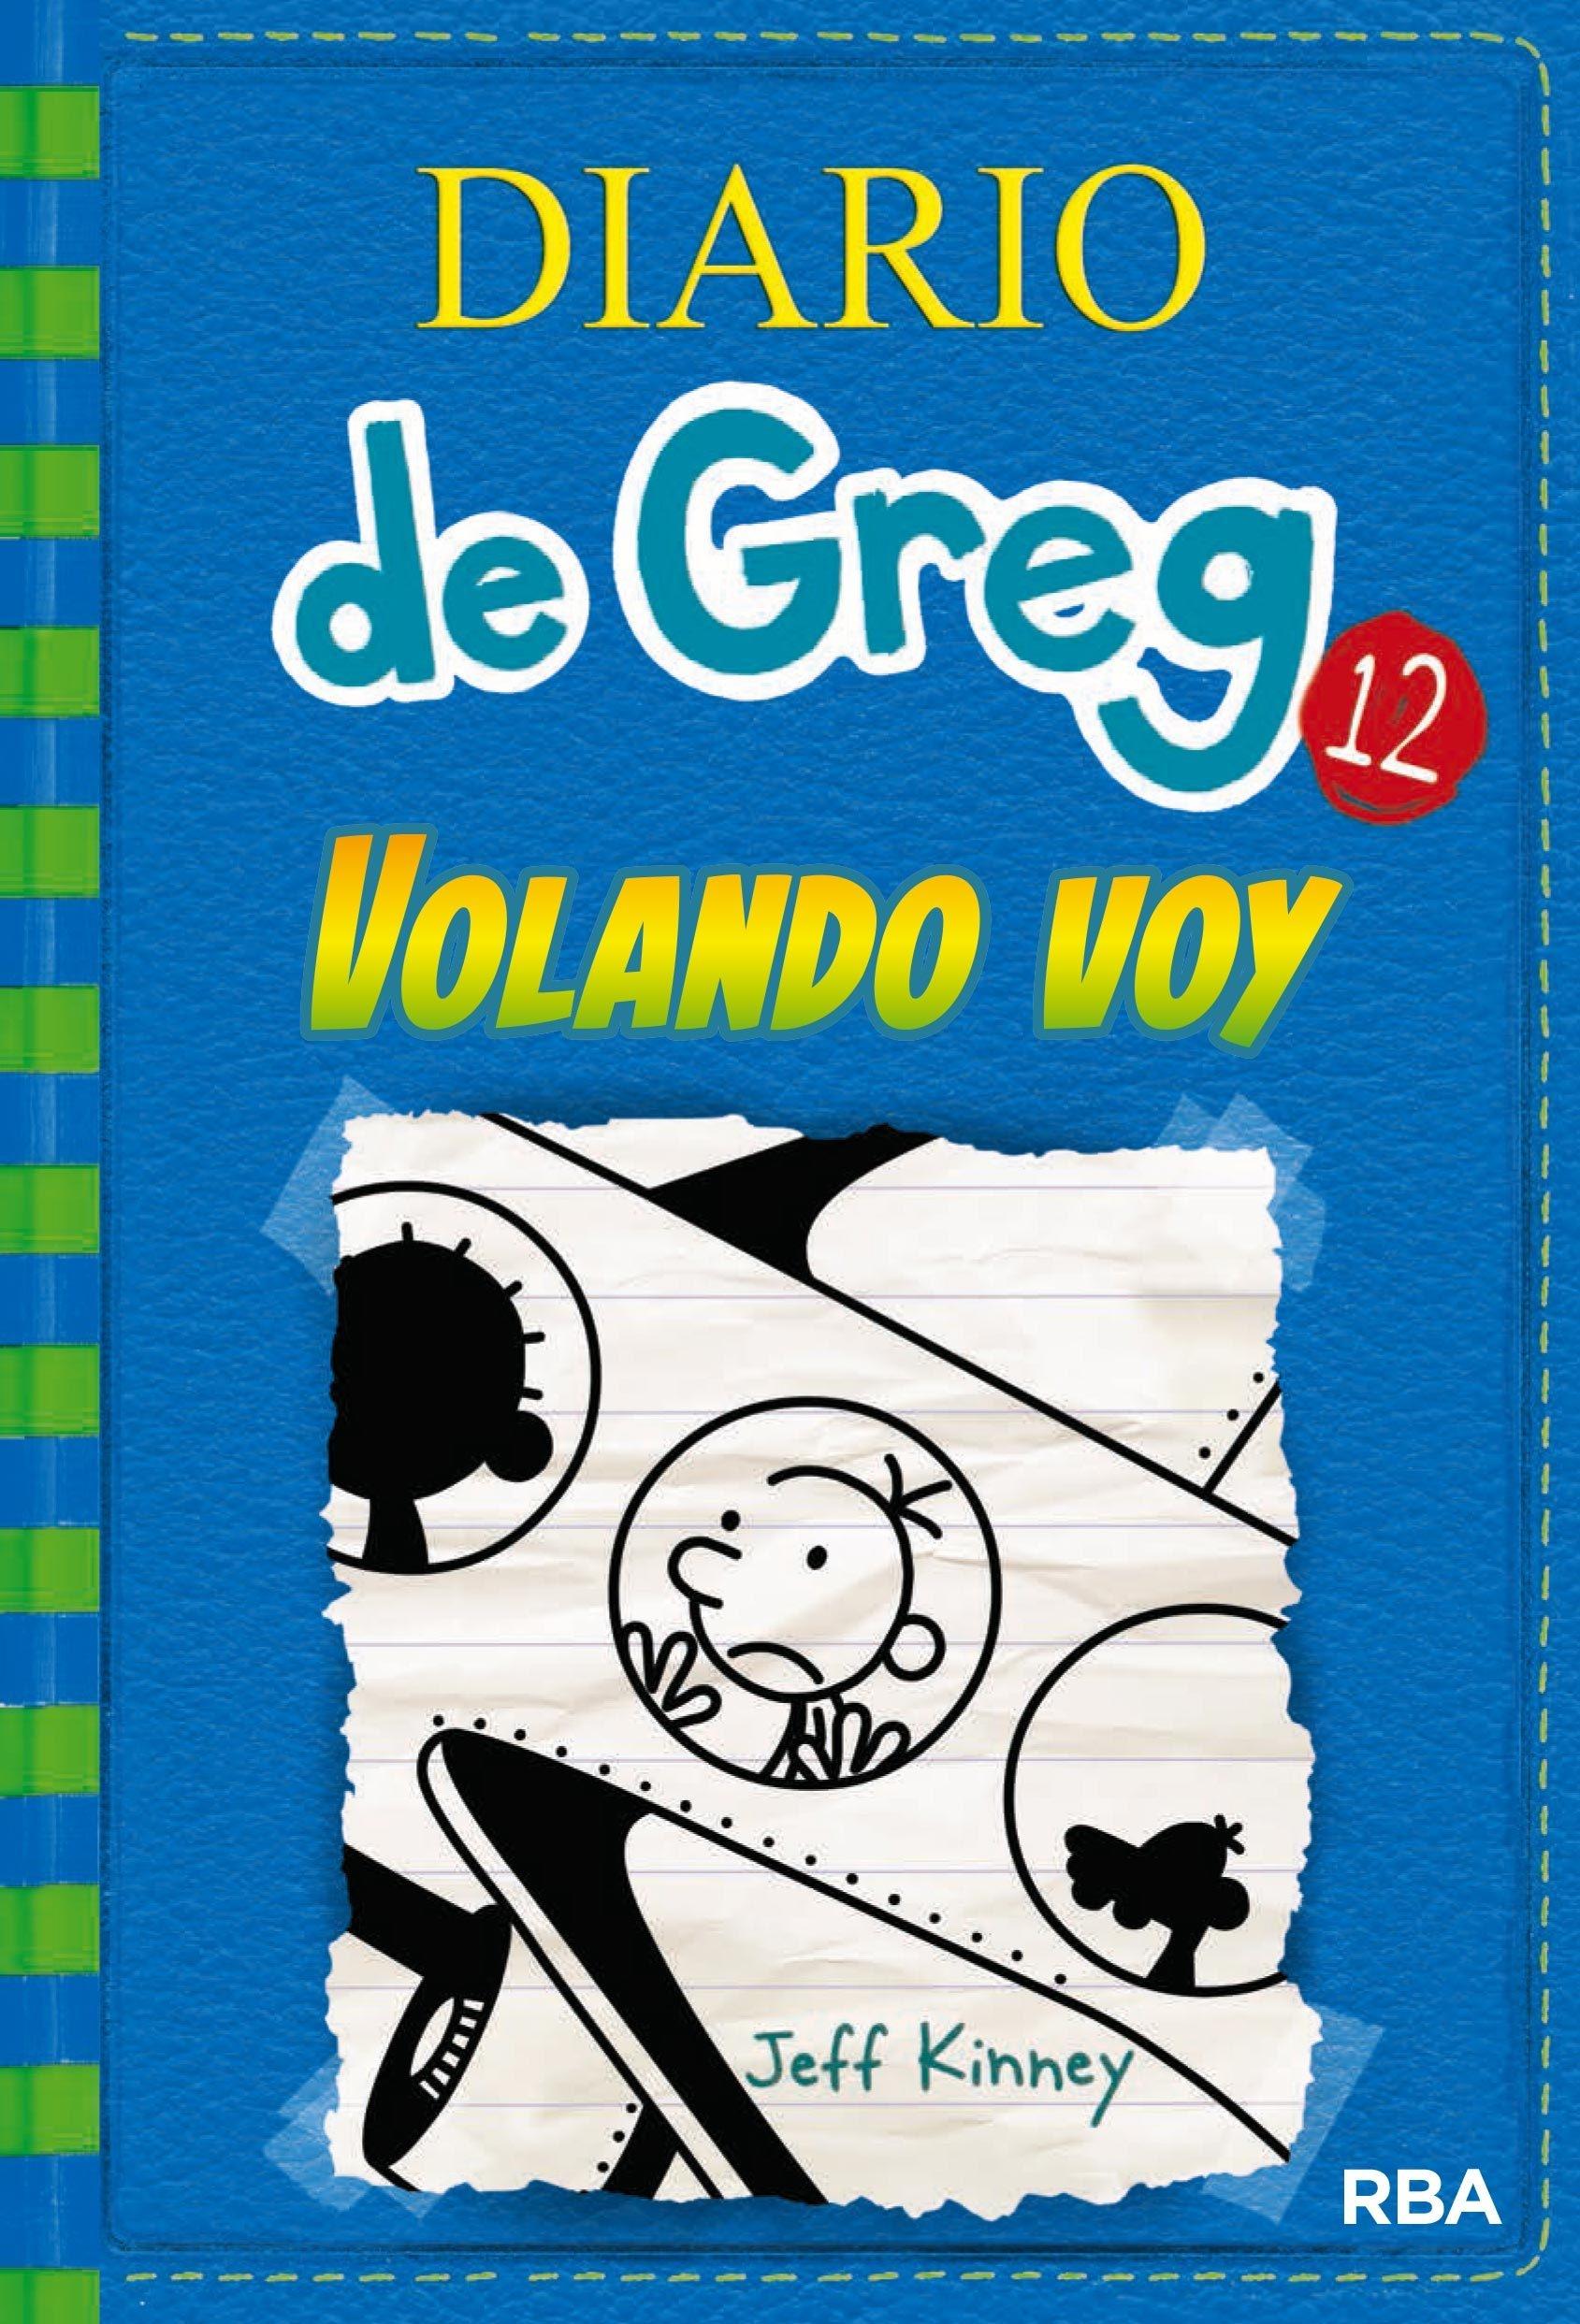 Diario de Greg 12 "Volando Voy". 